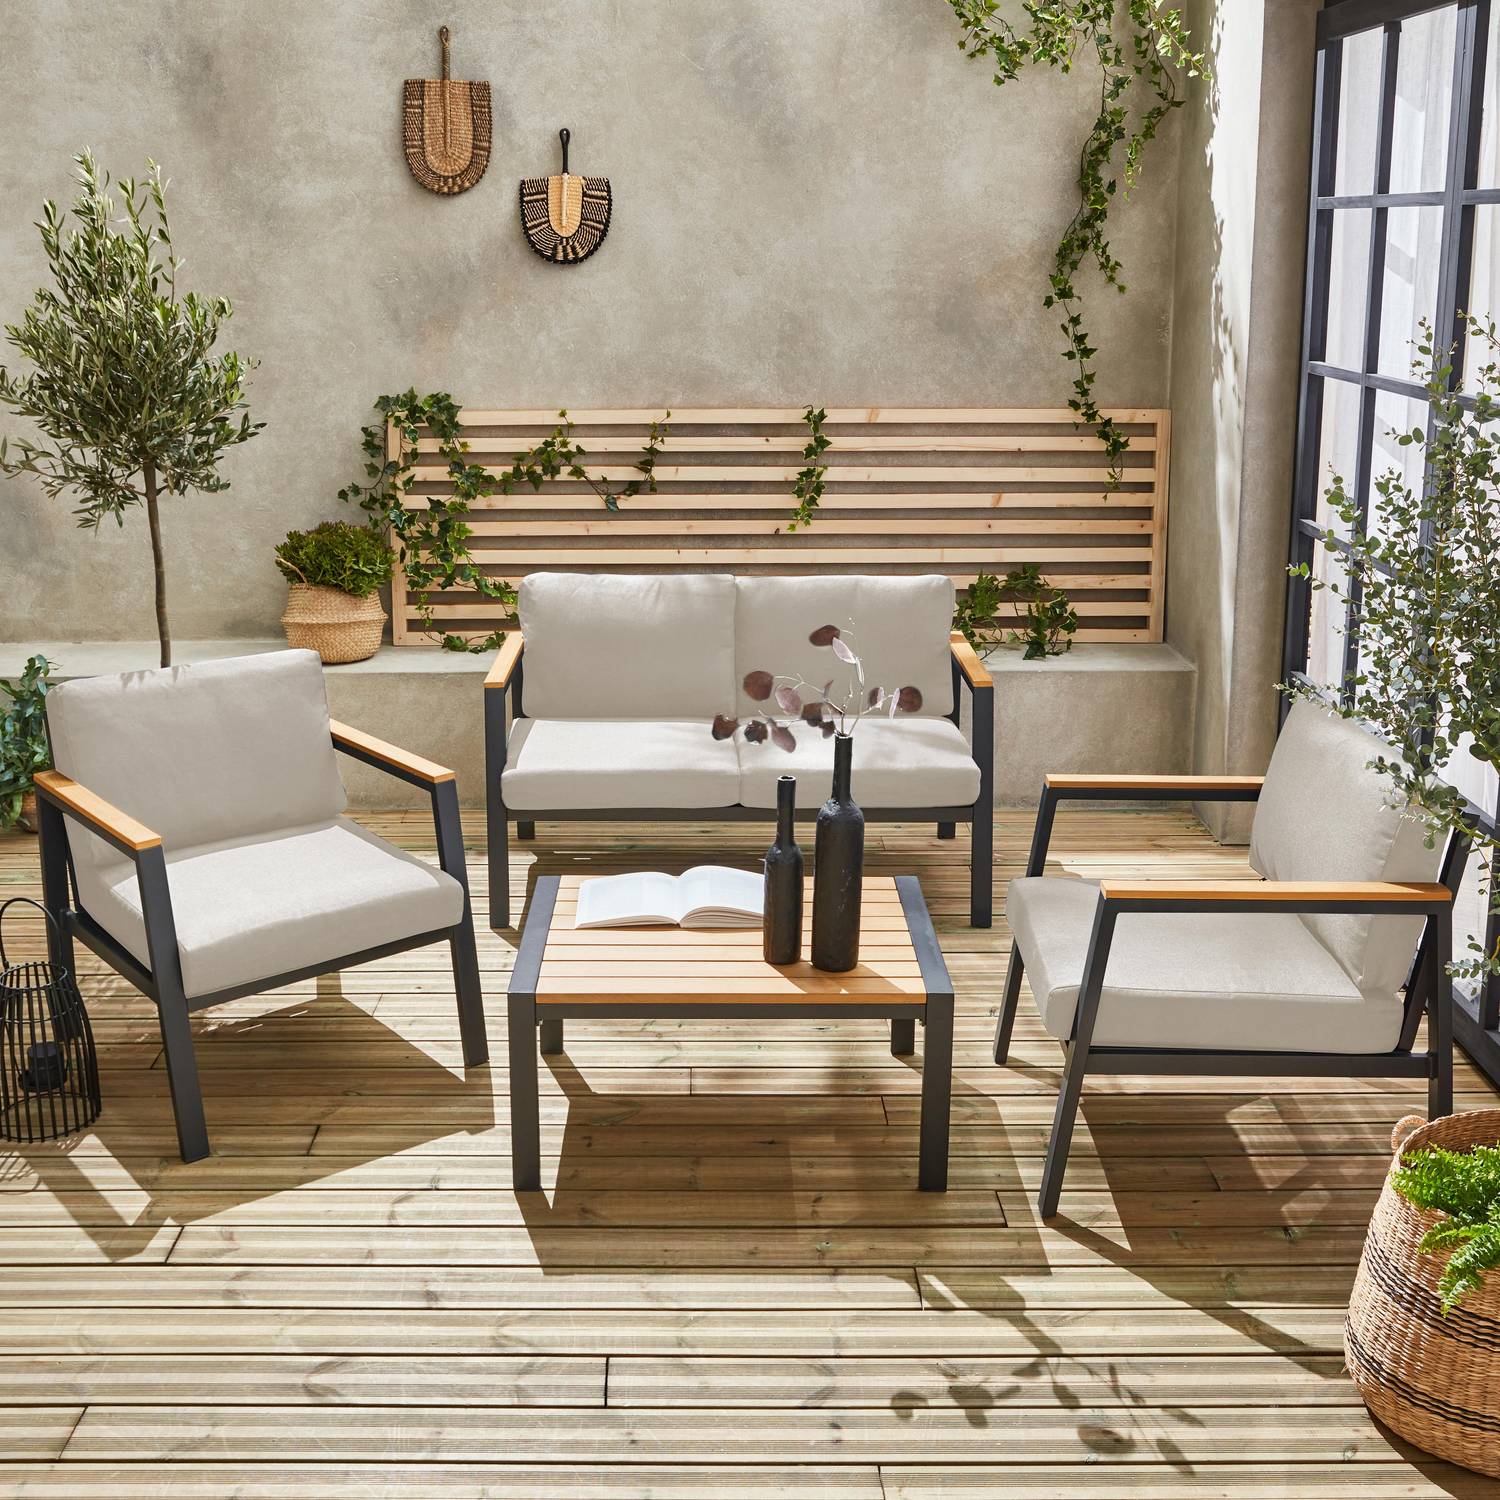 Conjunto de muebles de jardín Casoria, beige, aluminio y polywood 4 plazas, 1 sofá, 2 sillones, 1 mesa de centro Photo2